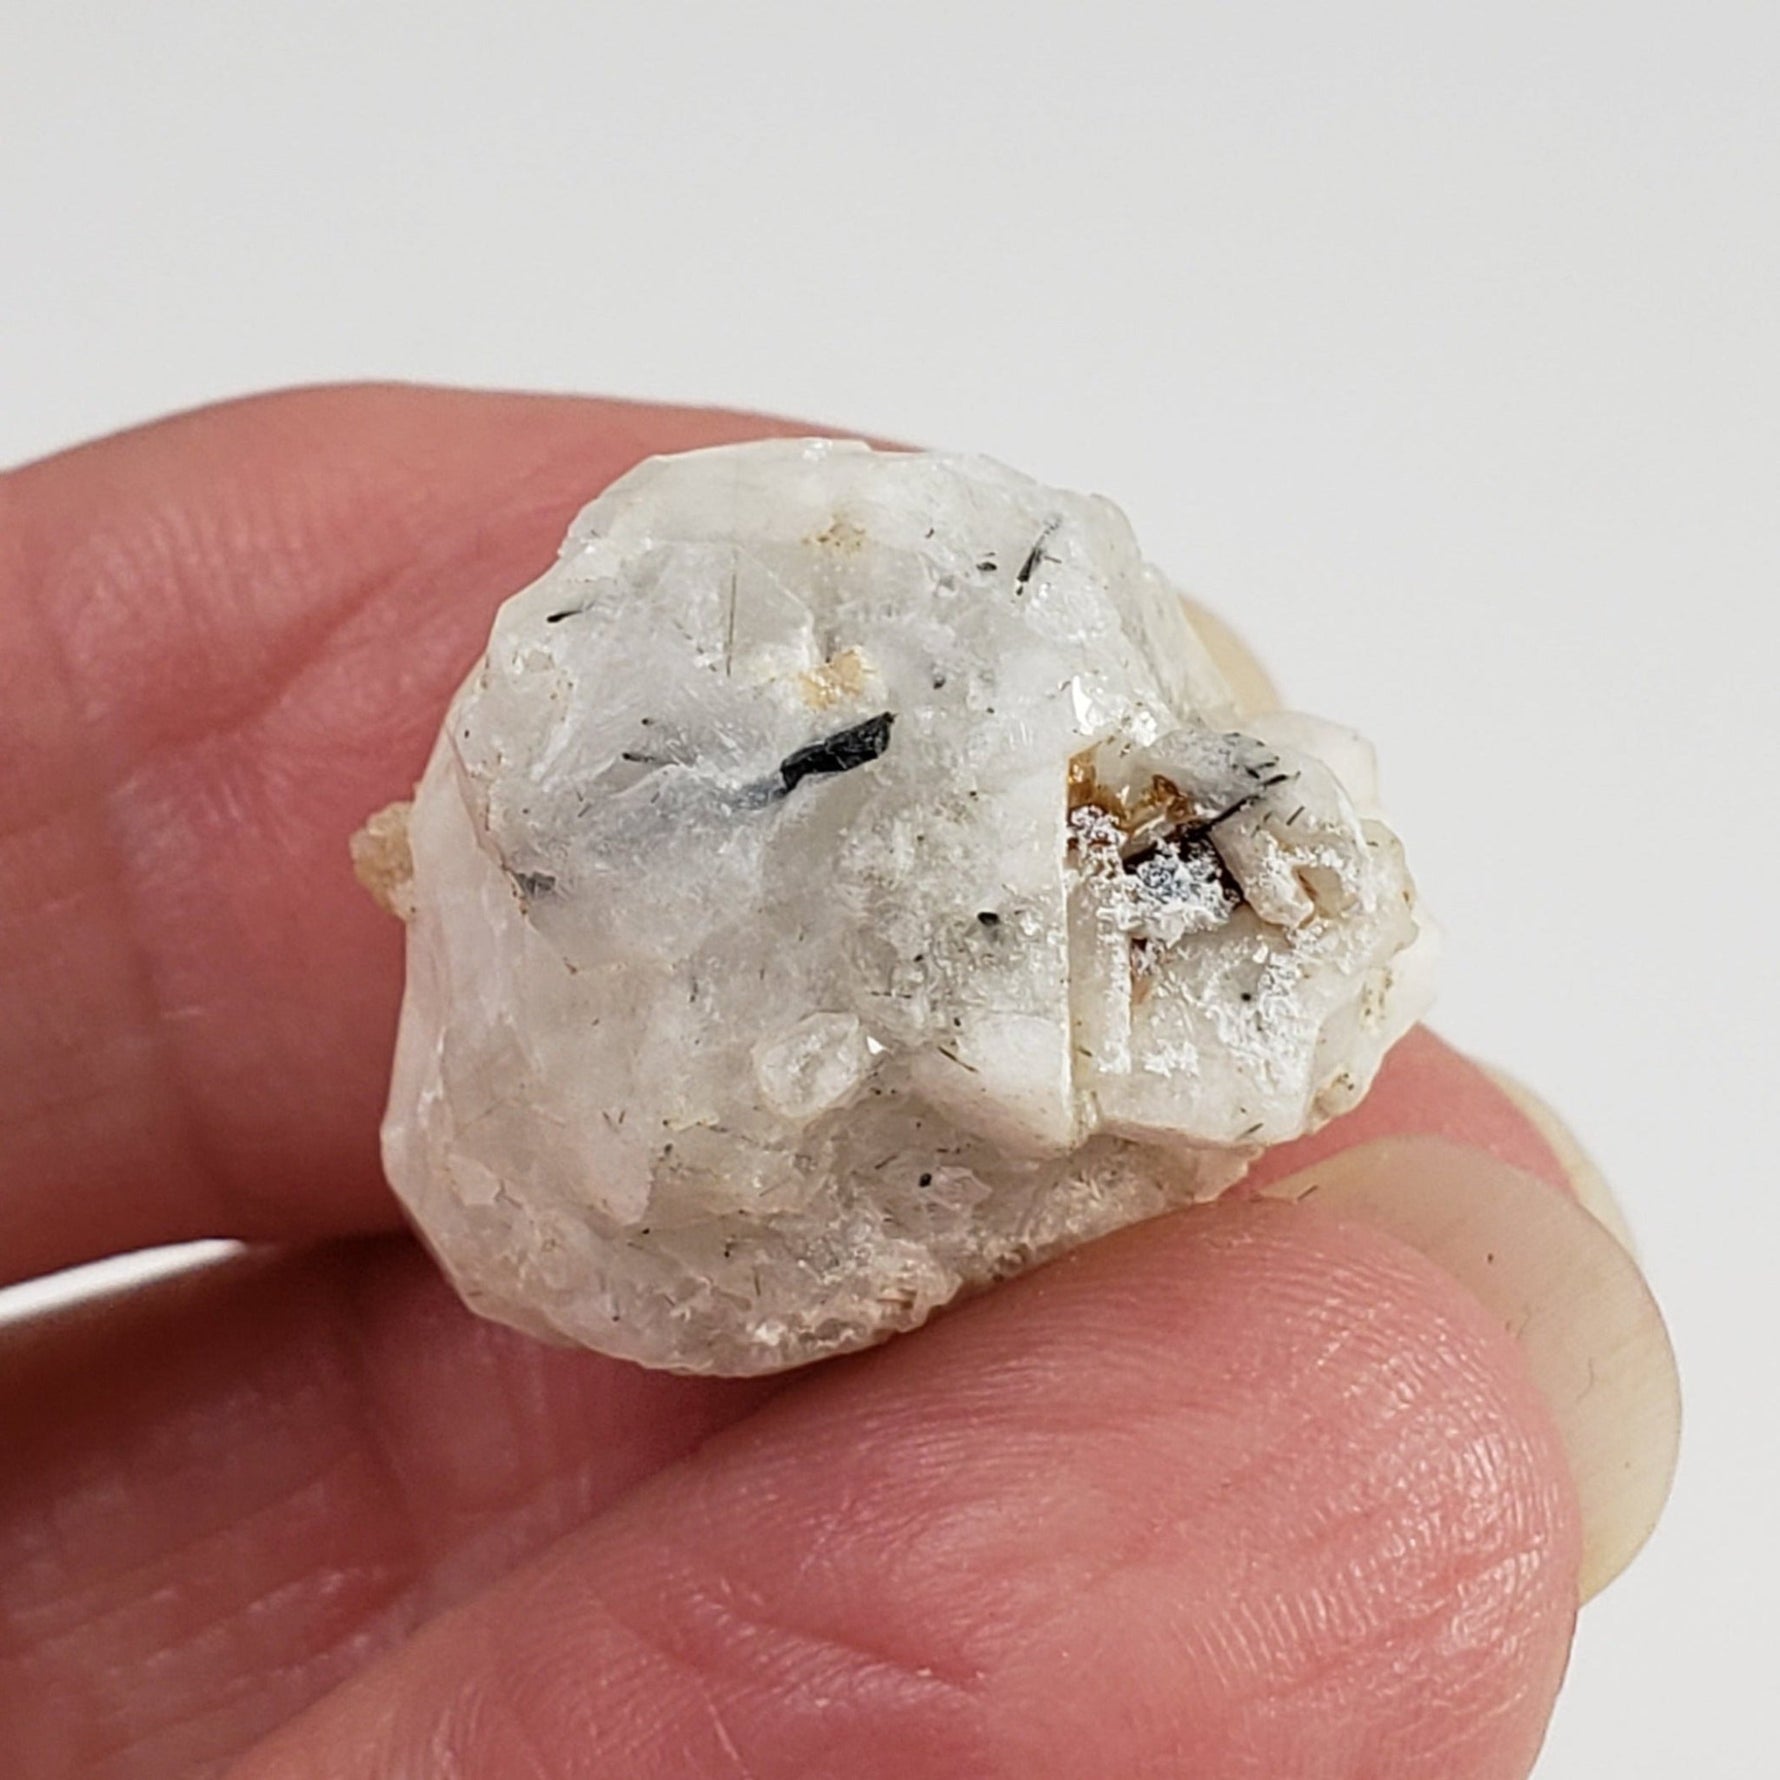 Analcime Crystal | Perky Box Thumbnail Specimen | Poudrette Quarry, Mont Saint-Hilaire